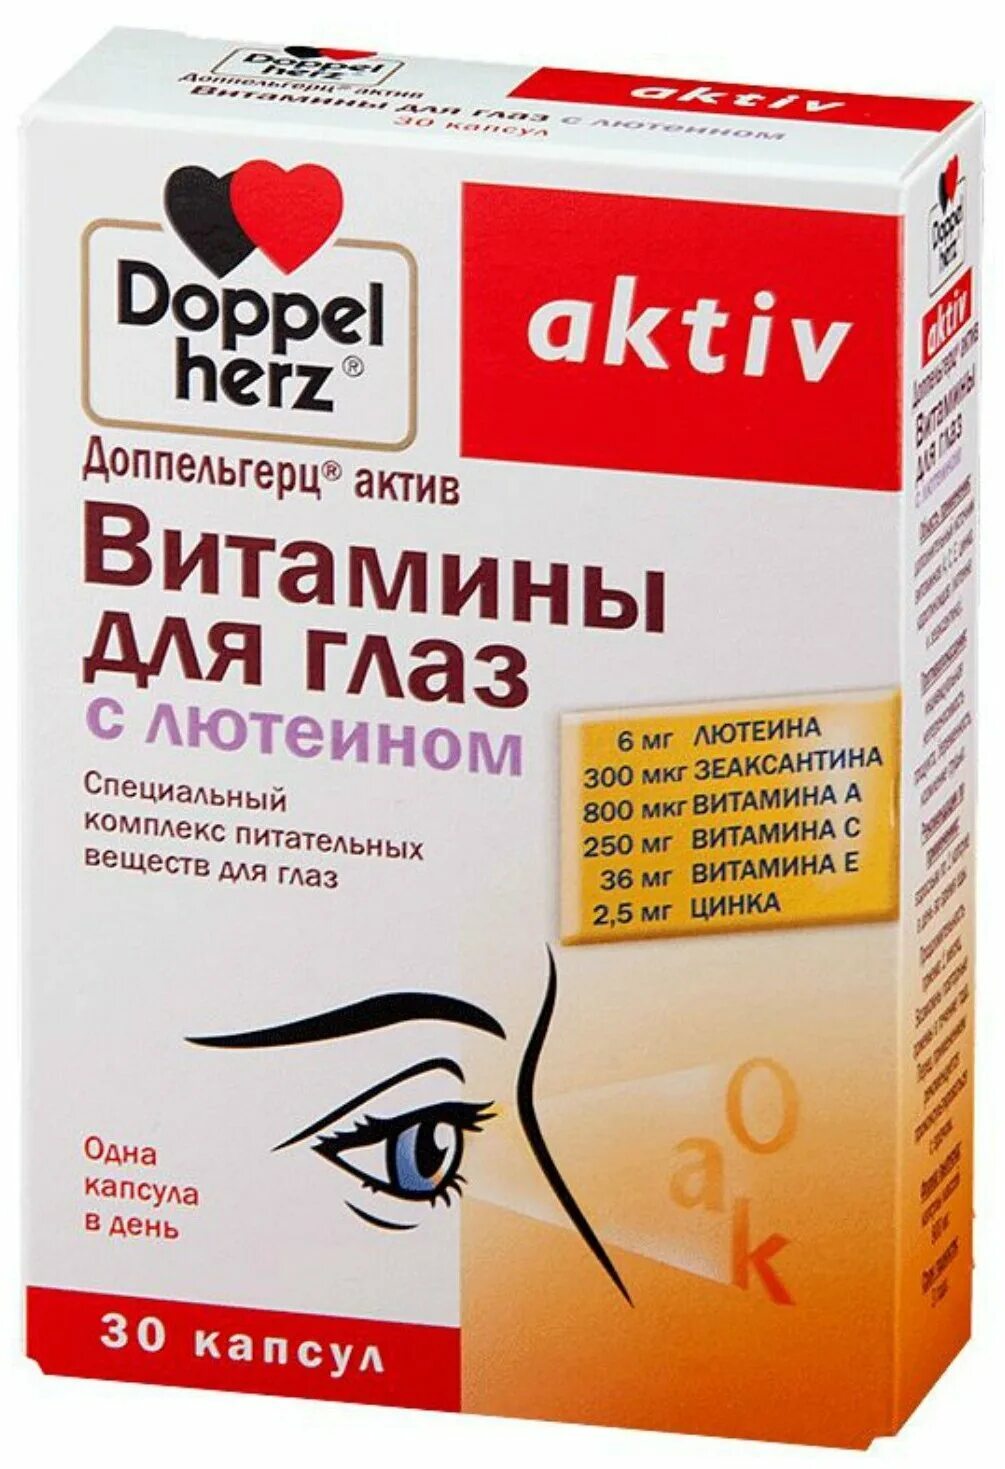 Доппельгерц витамины для глаз. Витамины для глаз допель Герц с лютеином. Доппельгерц Актив витамины капсулы. Доппельгерц Актив витамины для глаз с лютеином.